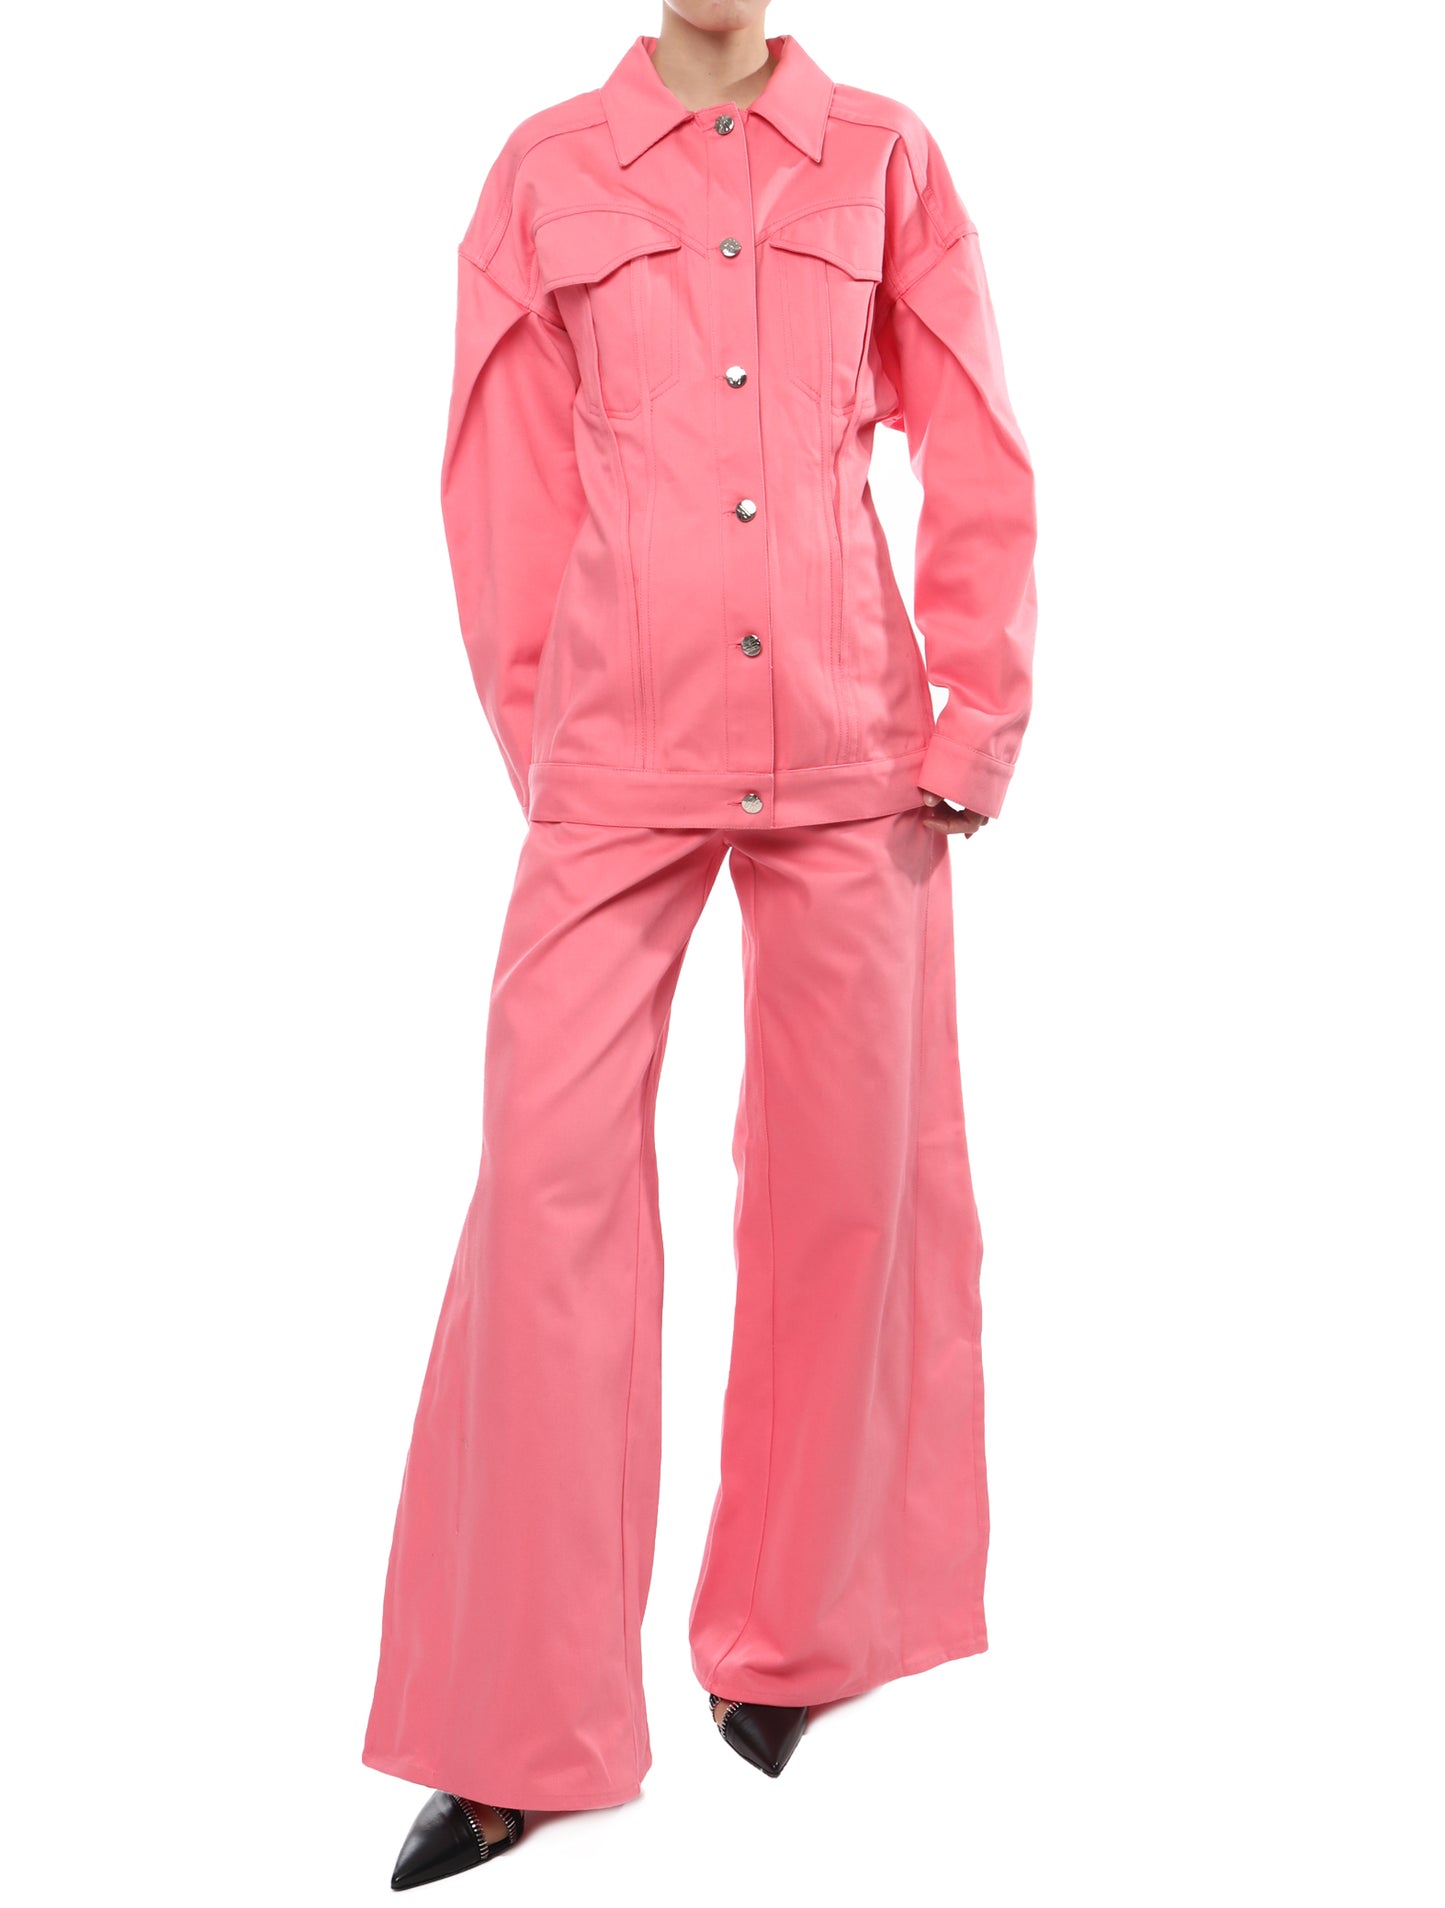 Maitrepierre Duchesse Pink Jacket